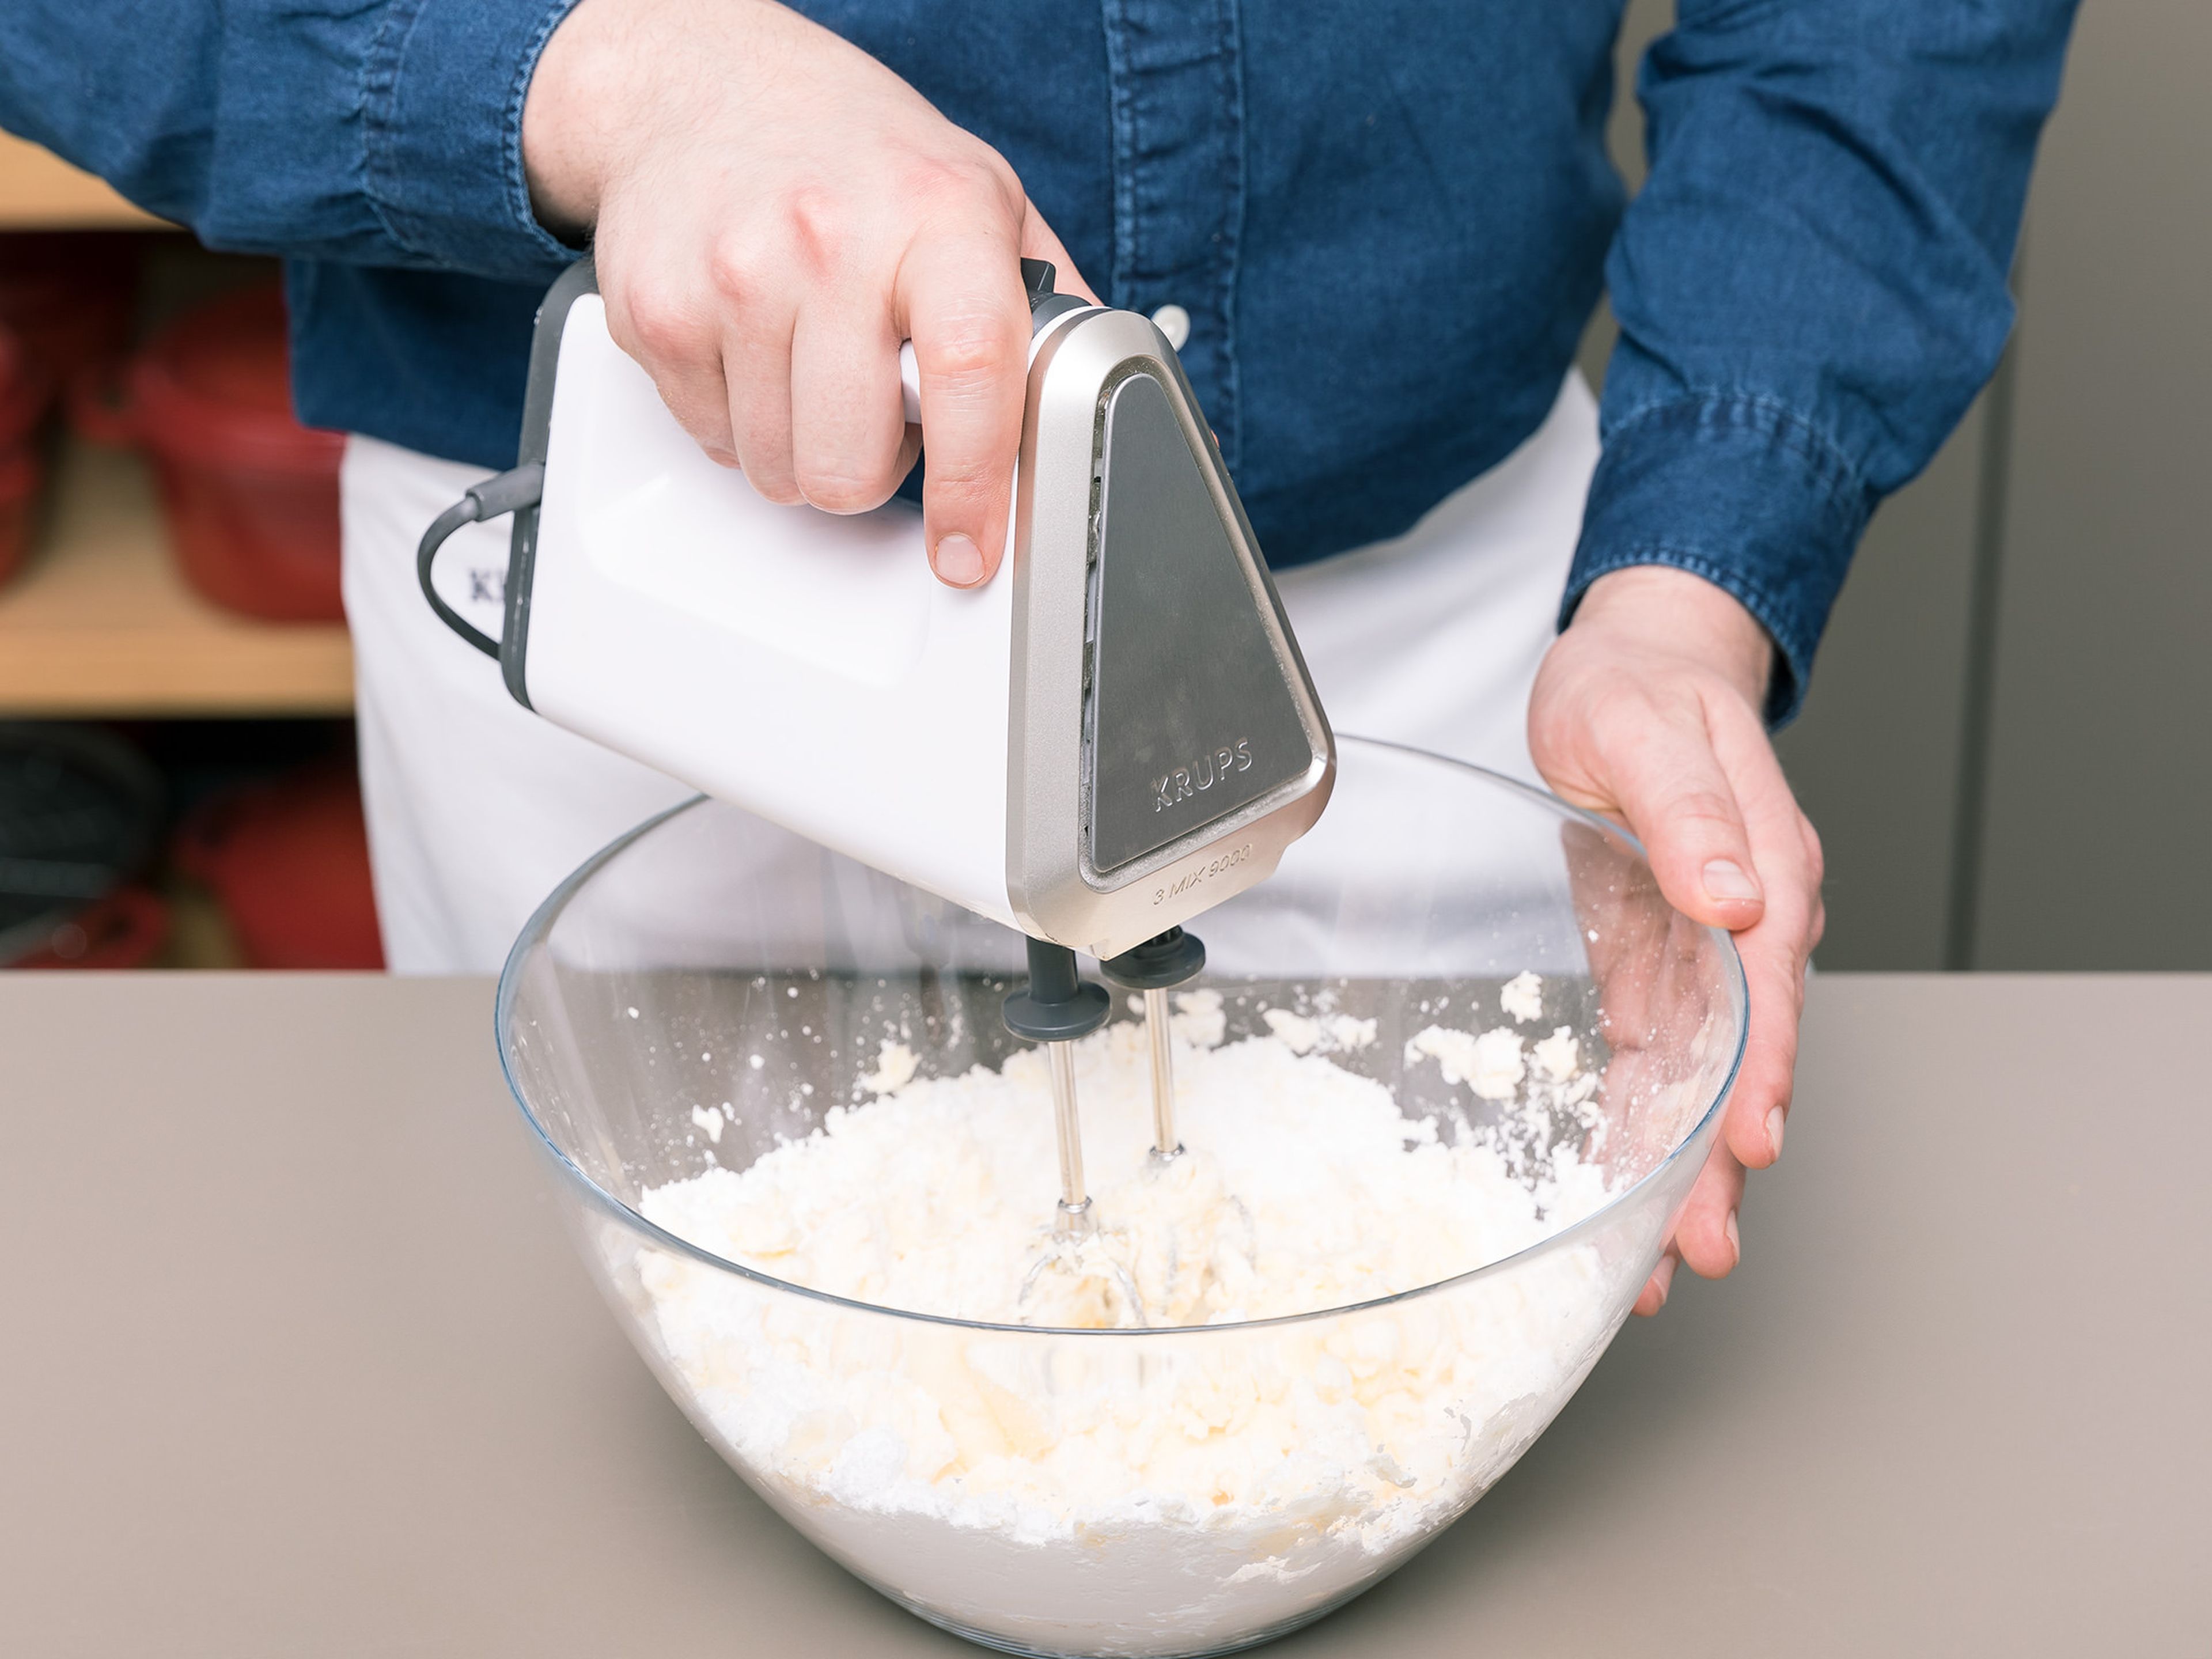 Backofen auf 175°C vorheizen. Eine Backform einfetten und mit Mehl bestäuben. In einer Schüssel den Großteil der Butter und des Puderzuckers mit der Hälfte des Vanilleextrakts und Salz schaumig schlagen. Die Eier nach und nach unterrühren. In einer separaten Schüssel Mehl und Backpulver vermengen. Schrittweise die Mehl-Backpulver-Mischung und die Kamillen-Milch zur Butter-Mischung geben und vermengen. Die eingeweichten Kamillenteeblätter abgießen, in den Teig geben und alles sorgfältig vermengen.